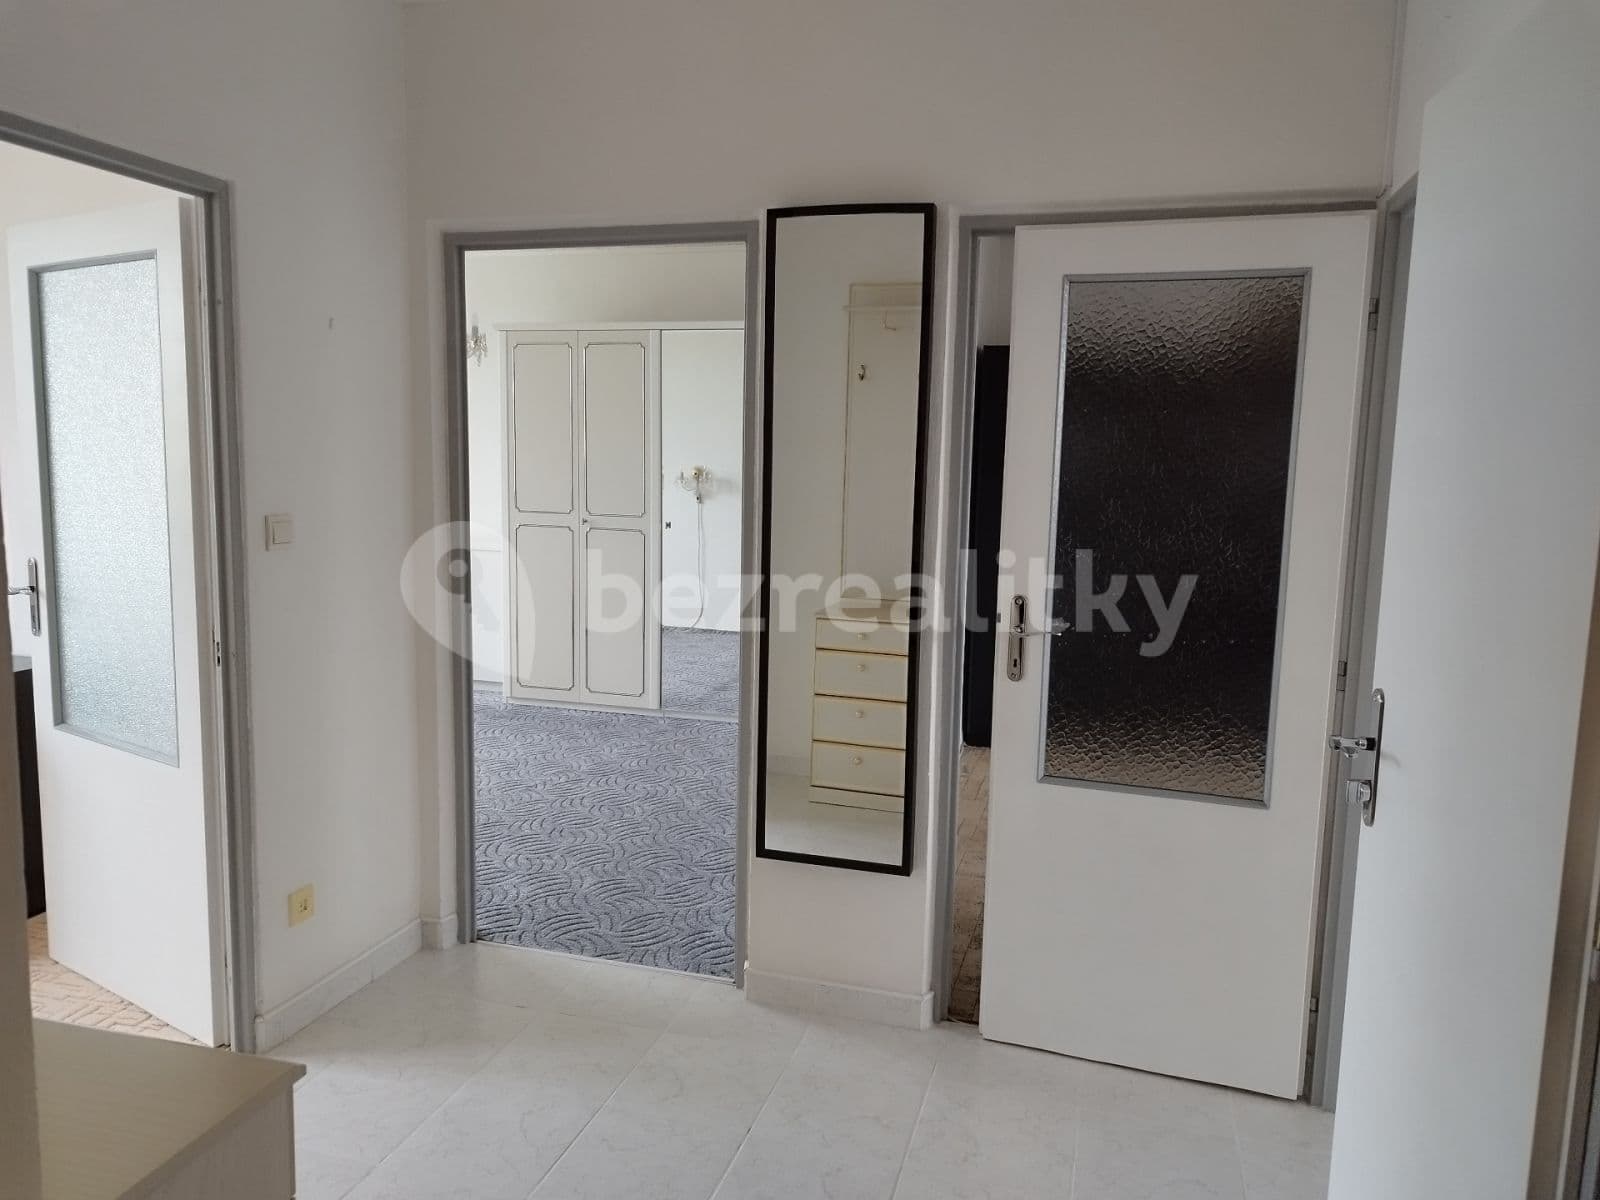 3 bedroom flat to rent, 72 m², Sídliště, Hrušovany u Brna, Jihomoravský Region